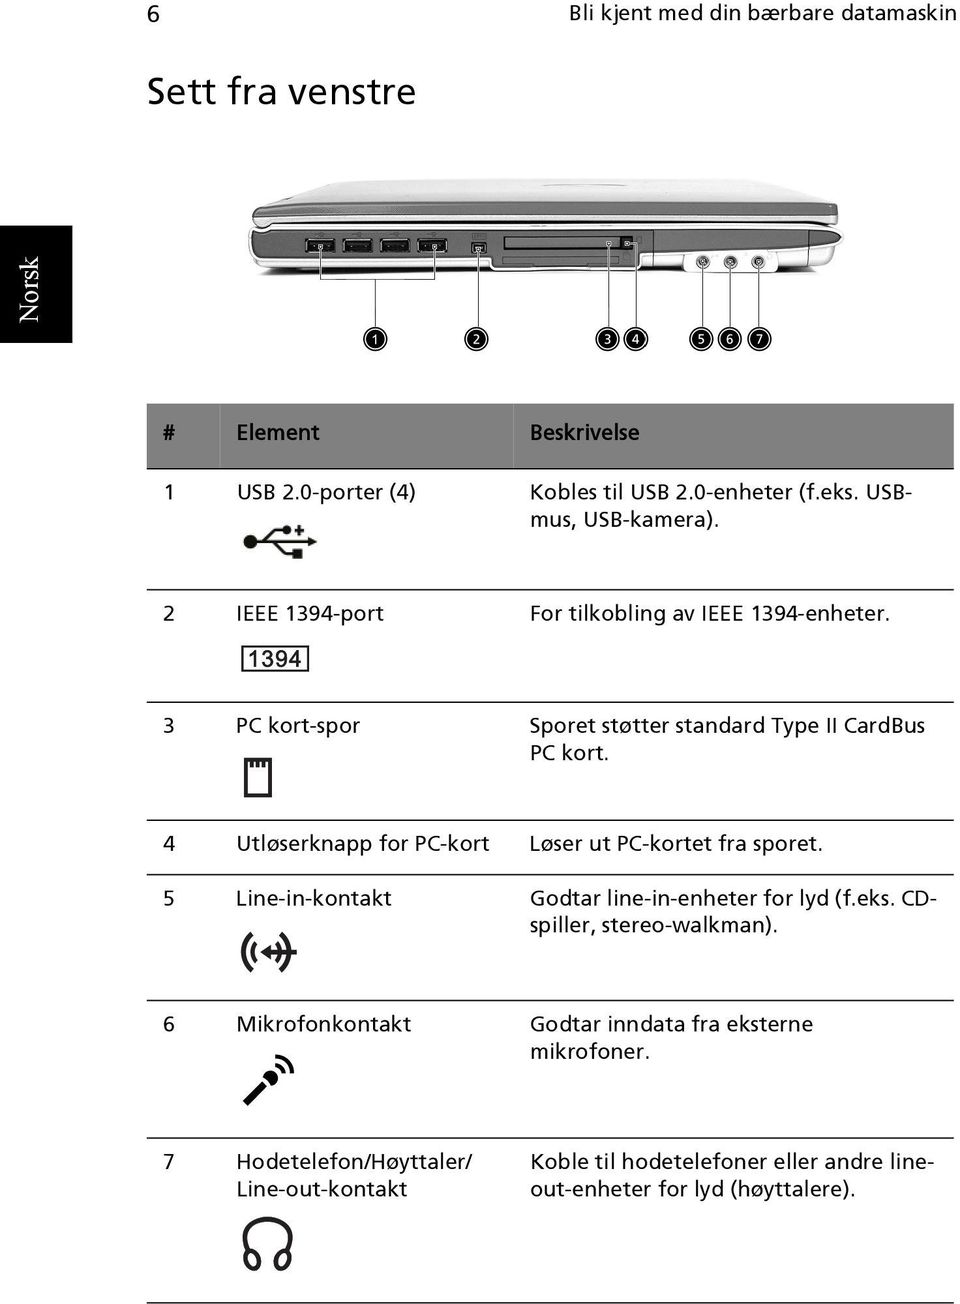 4 Utløserknapp for PC-kort Løser ut PC-kortet fra sporet. 5 Line-in-kontakt Godtar line-in-enheter for lyd (f.eks. CDspiller, stereo-walkman).